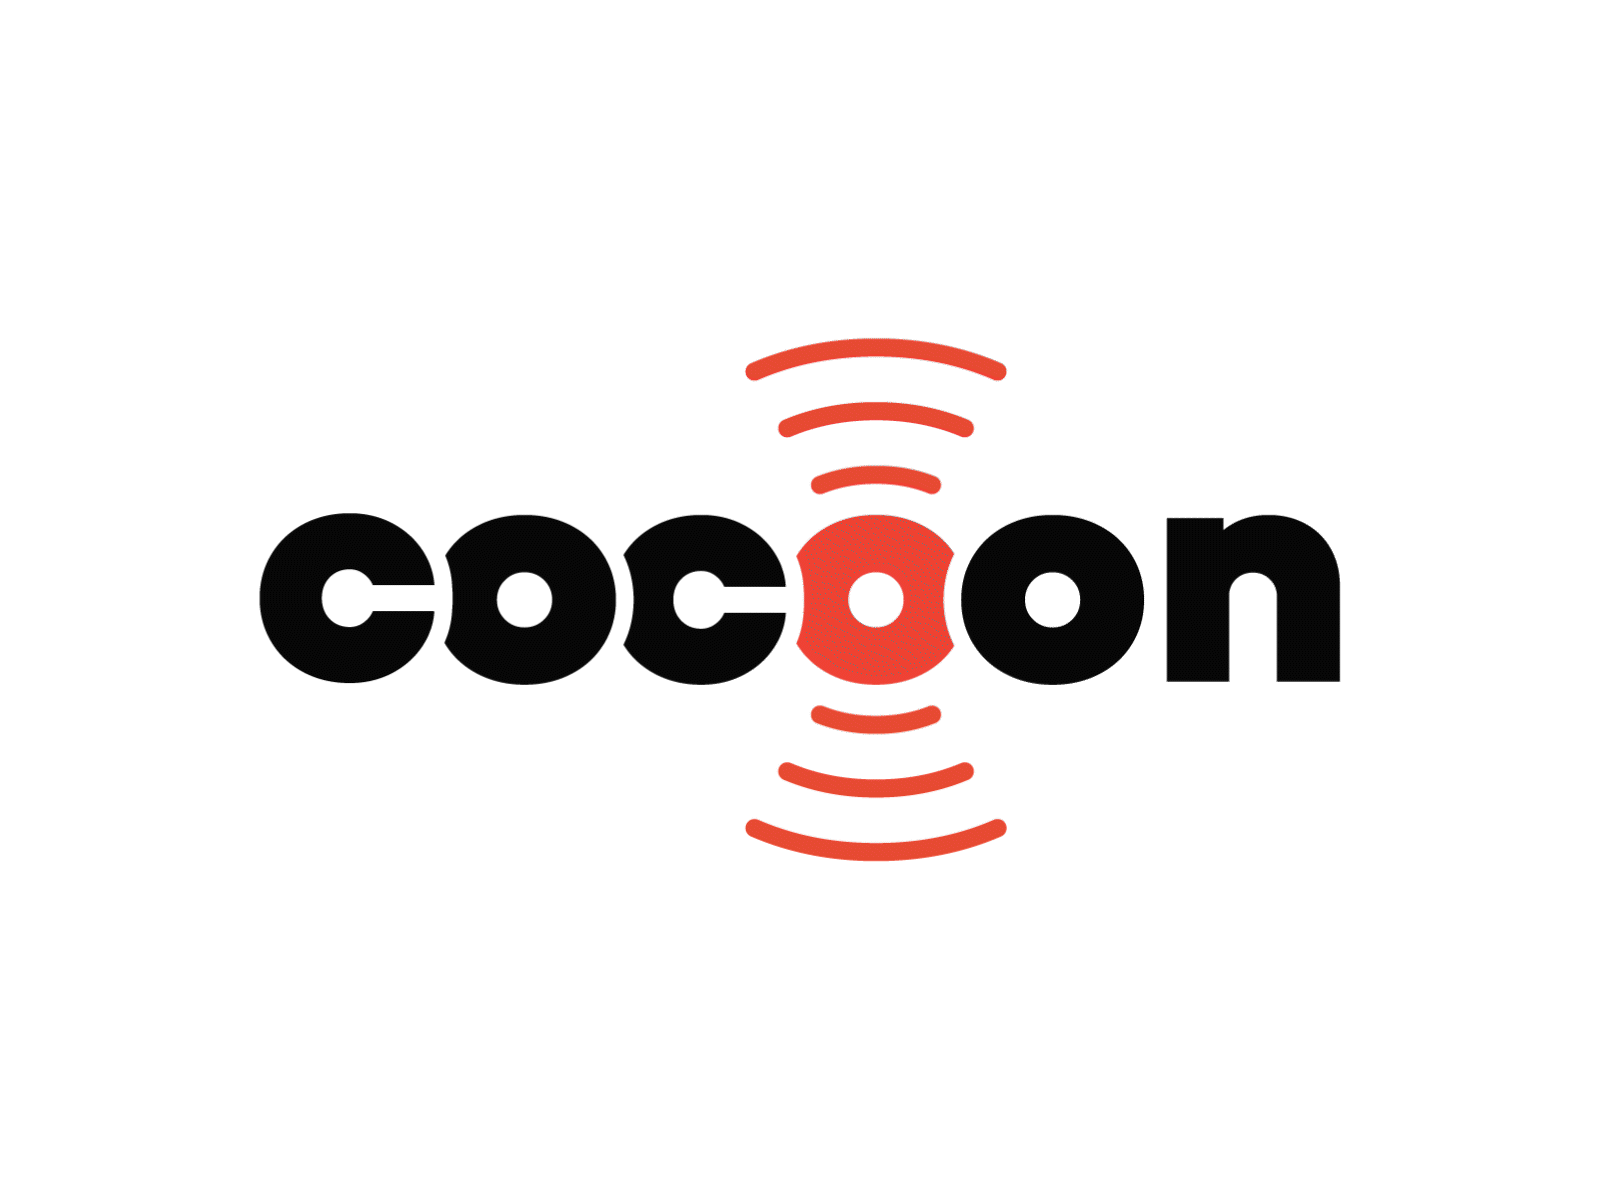 Cocoon - podcast studio